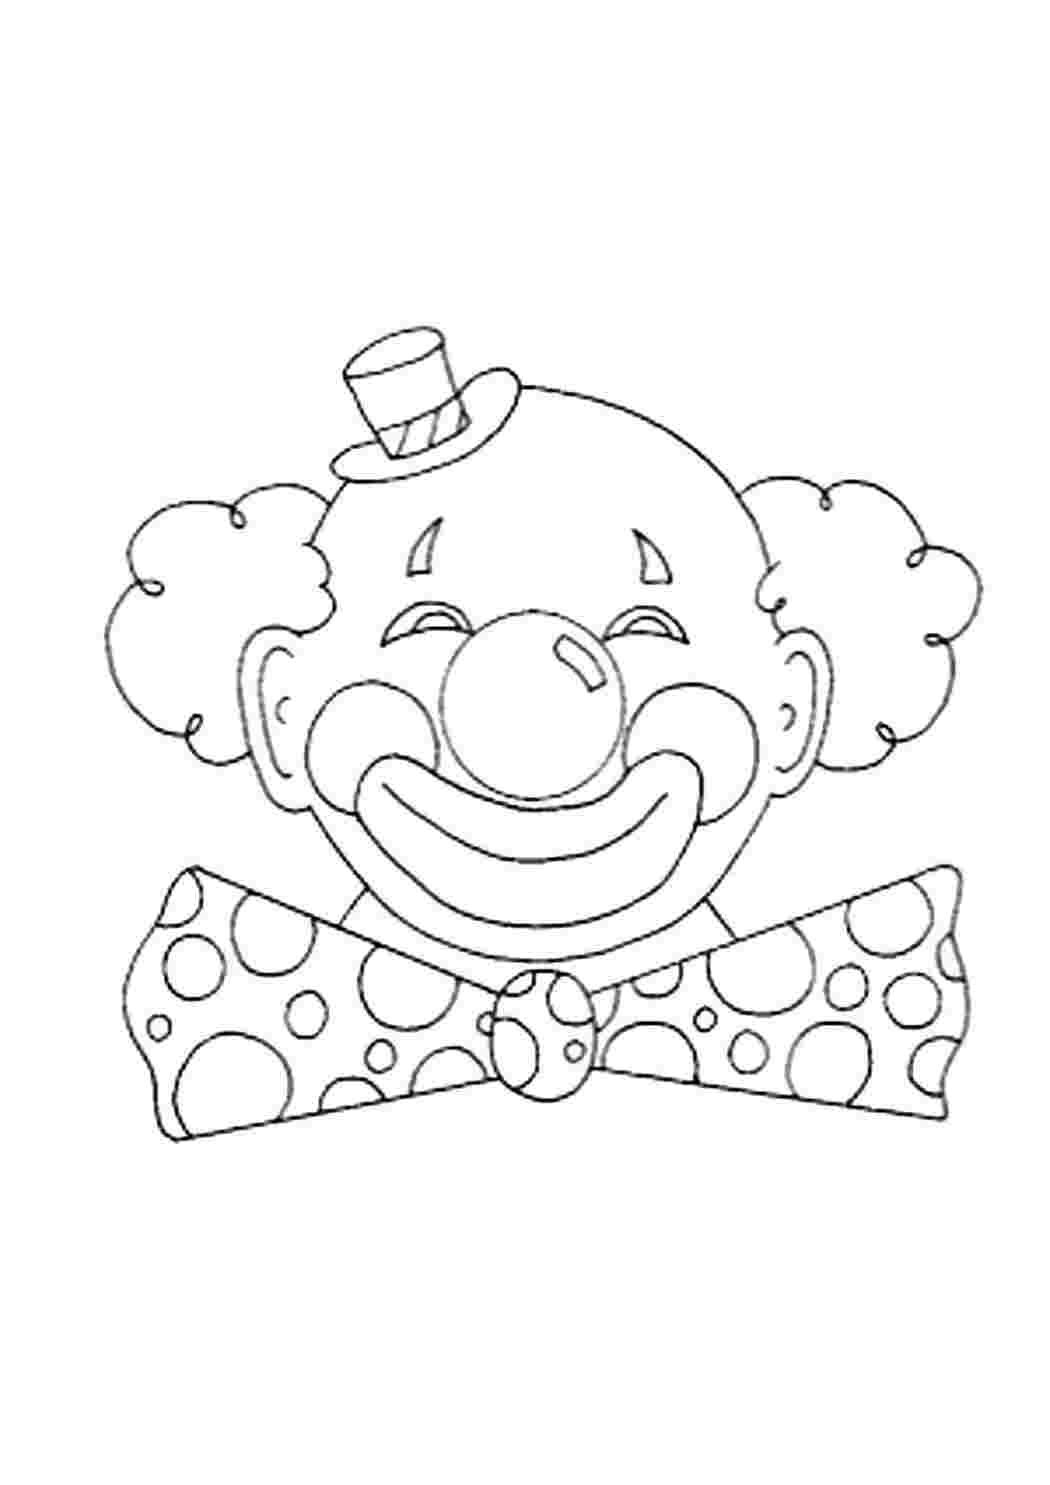 Клоун аппликация для детей шаблоны. Лицо клоуна раскраска. Шаблон лица клоуна для аппликации из бумаги. Лицо клоуна раскраски для детей. Маски на 1 апреля распечатать